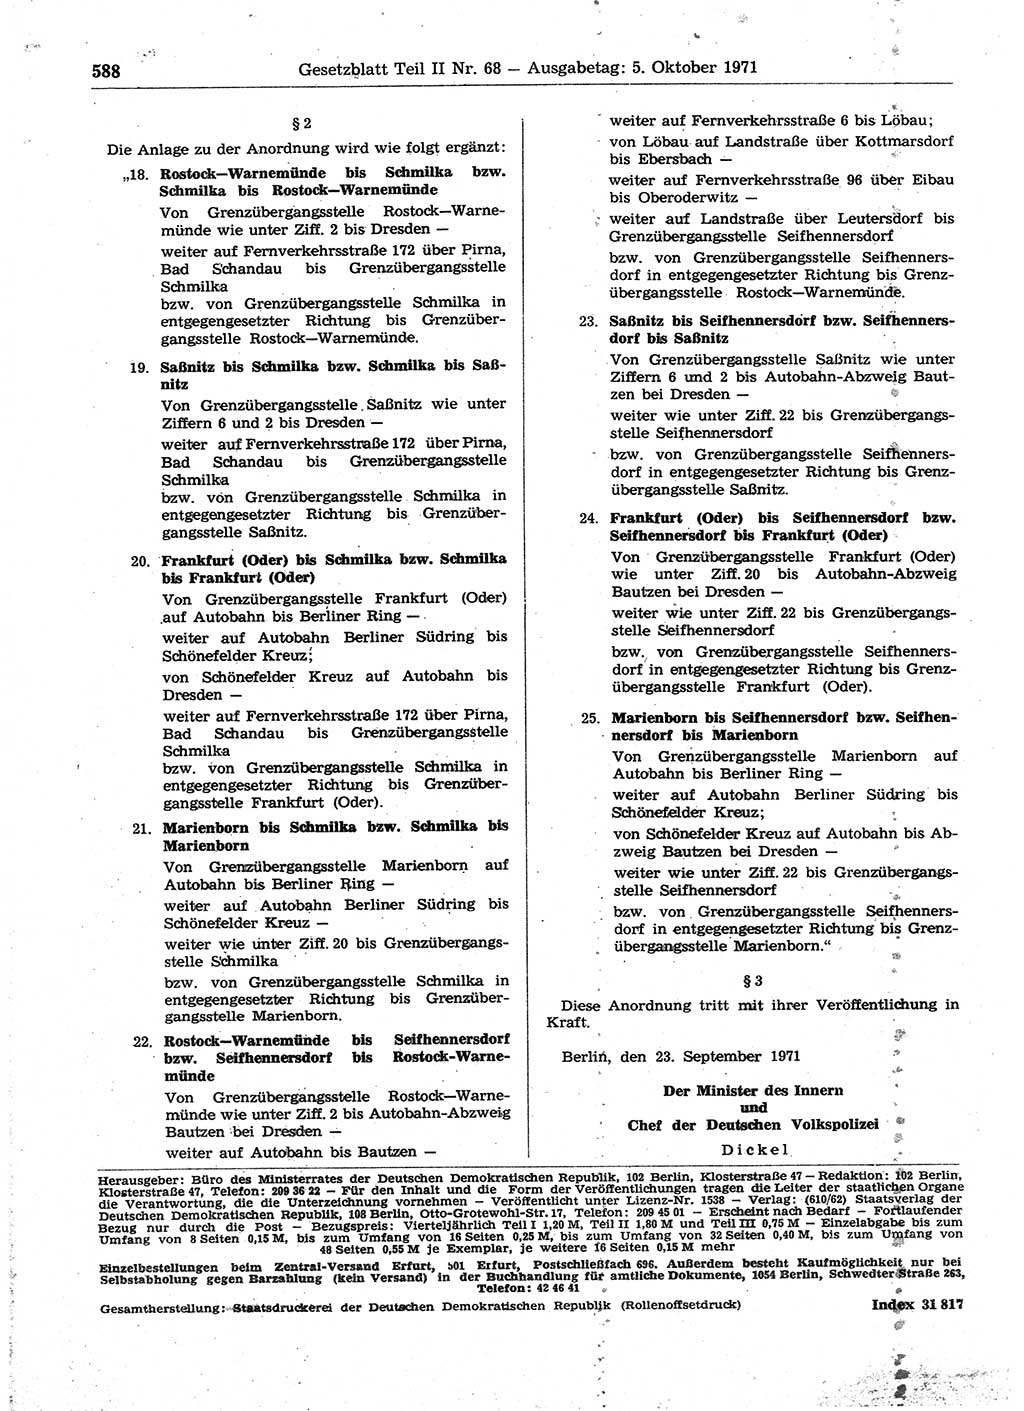 Gesetzblatt (GBl.) der Deutschen Demokratischen Republik (DDR) Teil ⅠⅠ 1971, Seite 588 (GBl. DDR ⅠⅠ 1971, S. 588)